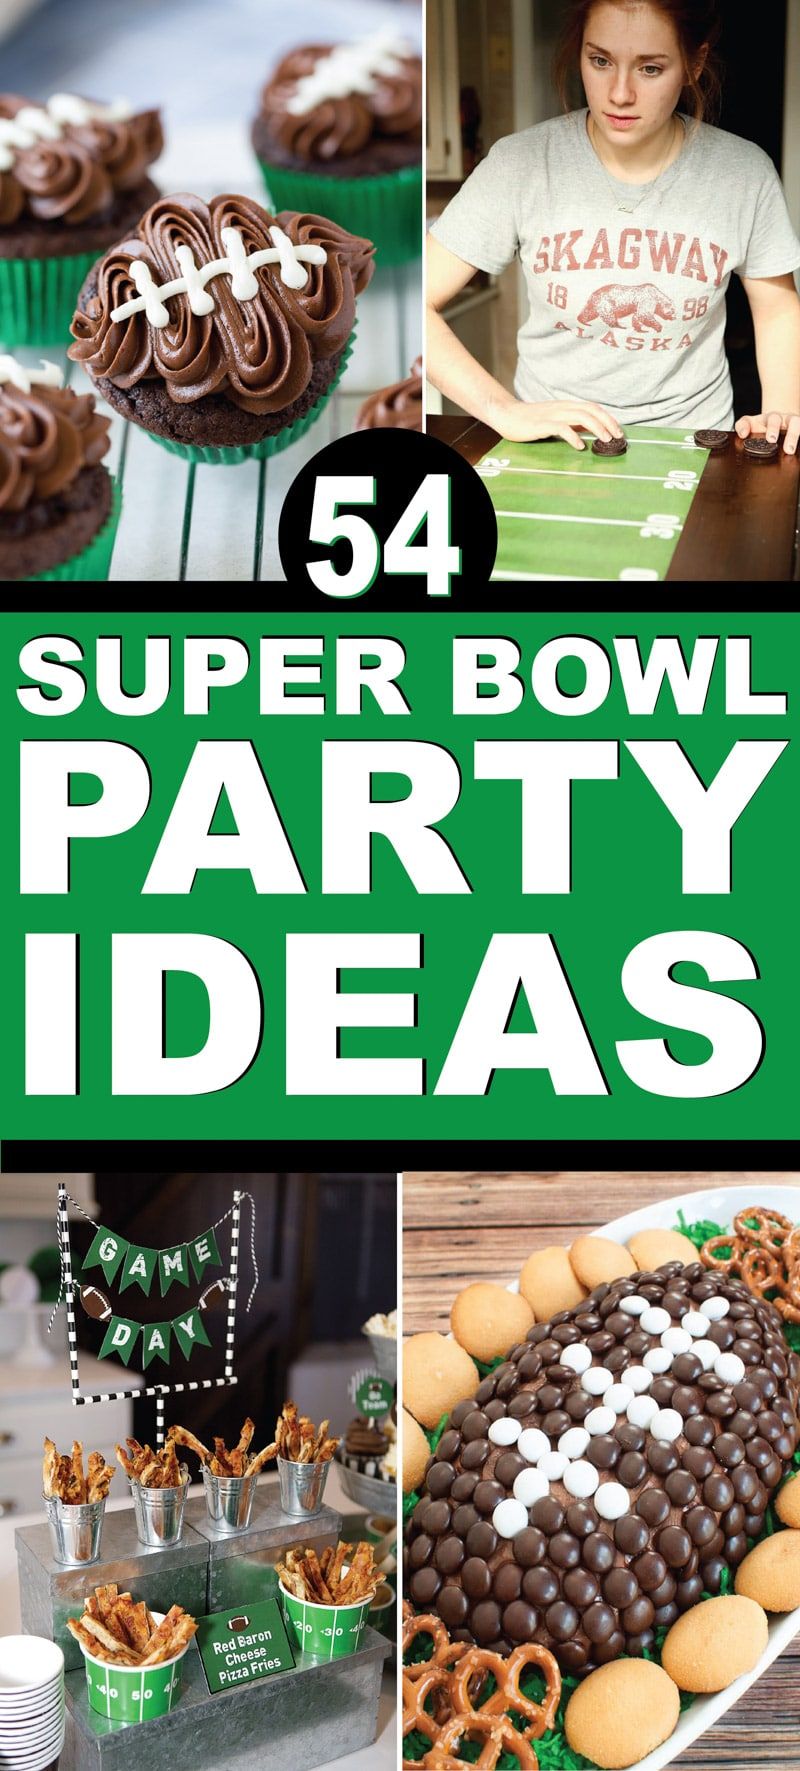 Les millors idees de festes del Super Bowl. Menjar, decoracions i jocs per a festes del Super Bowl.